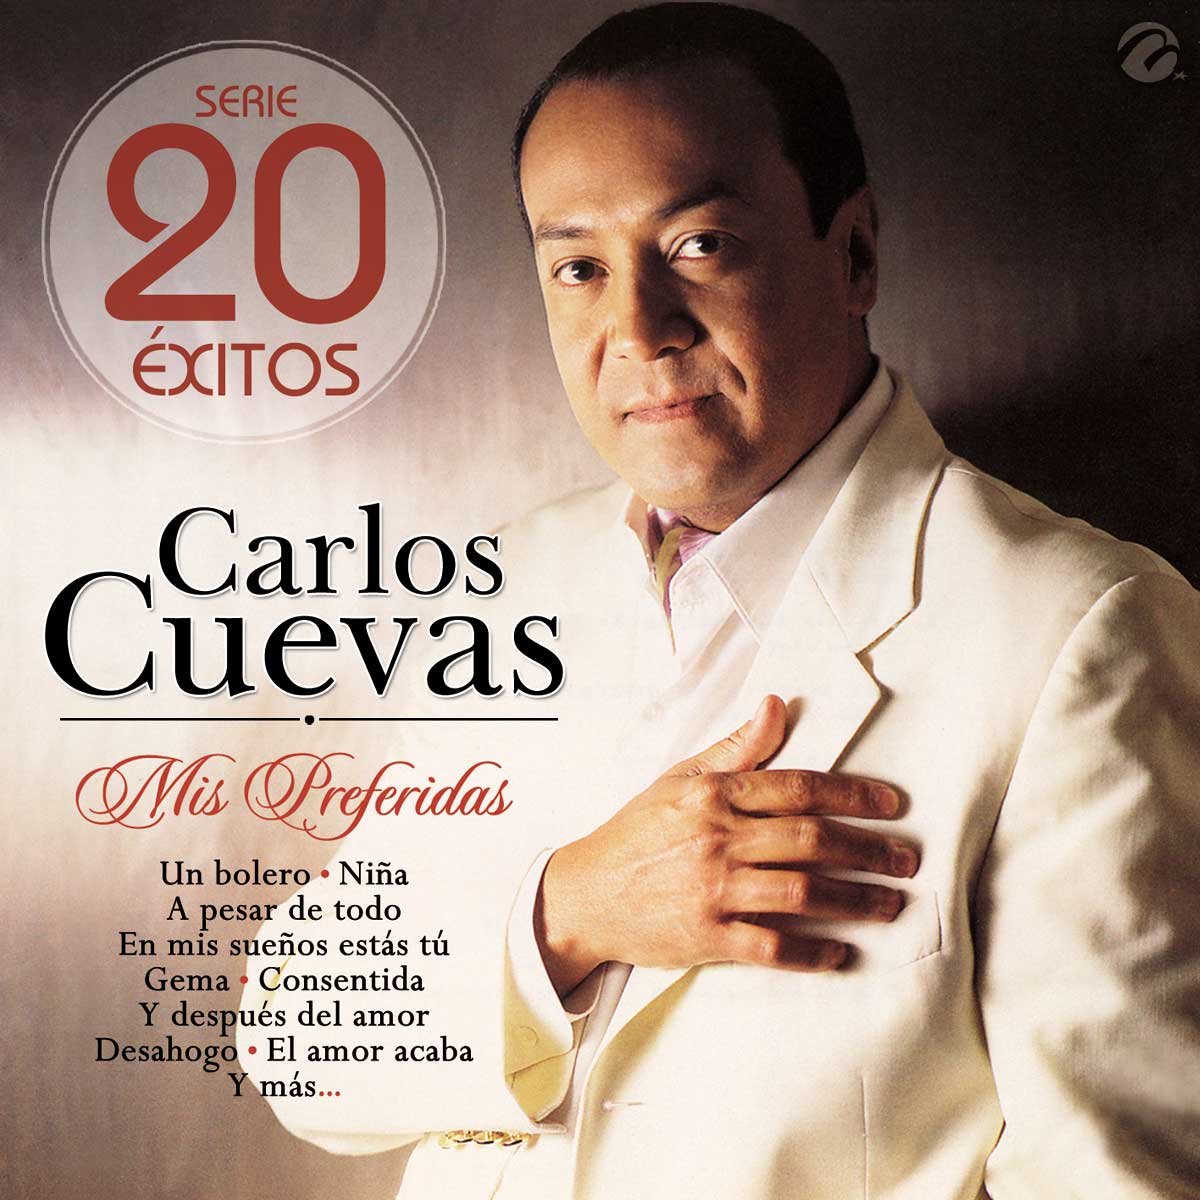 1 Cd Carlos Cuevas "mis Preferidas" -Serie 20 Éxitos-